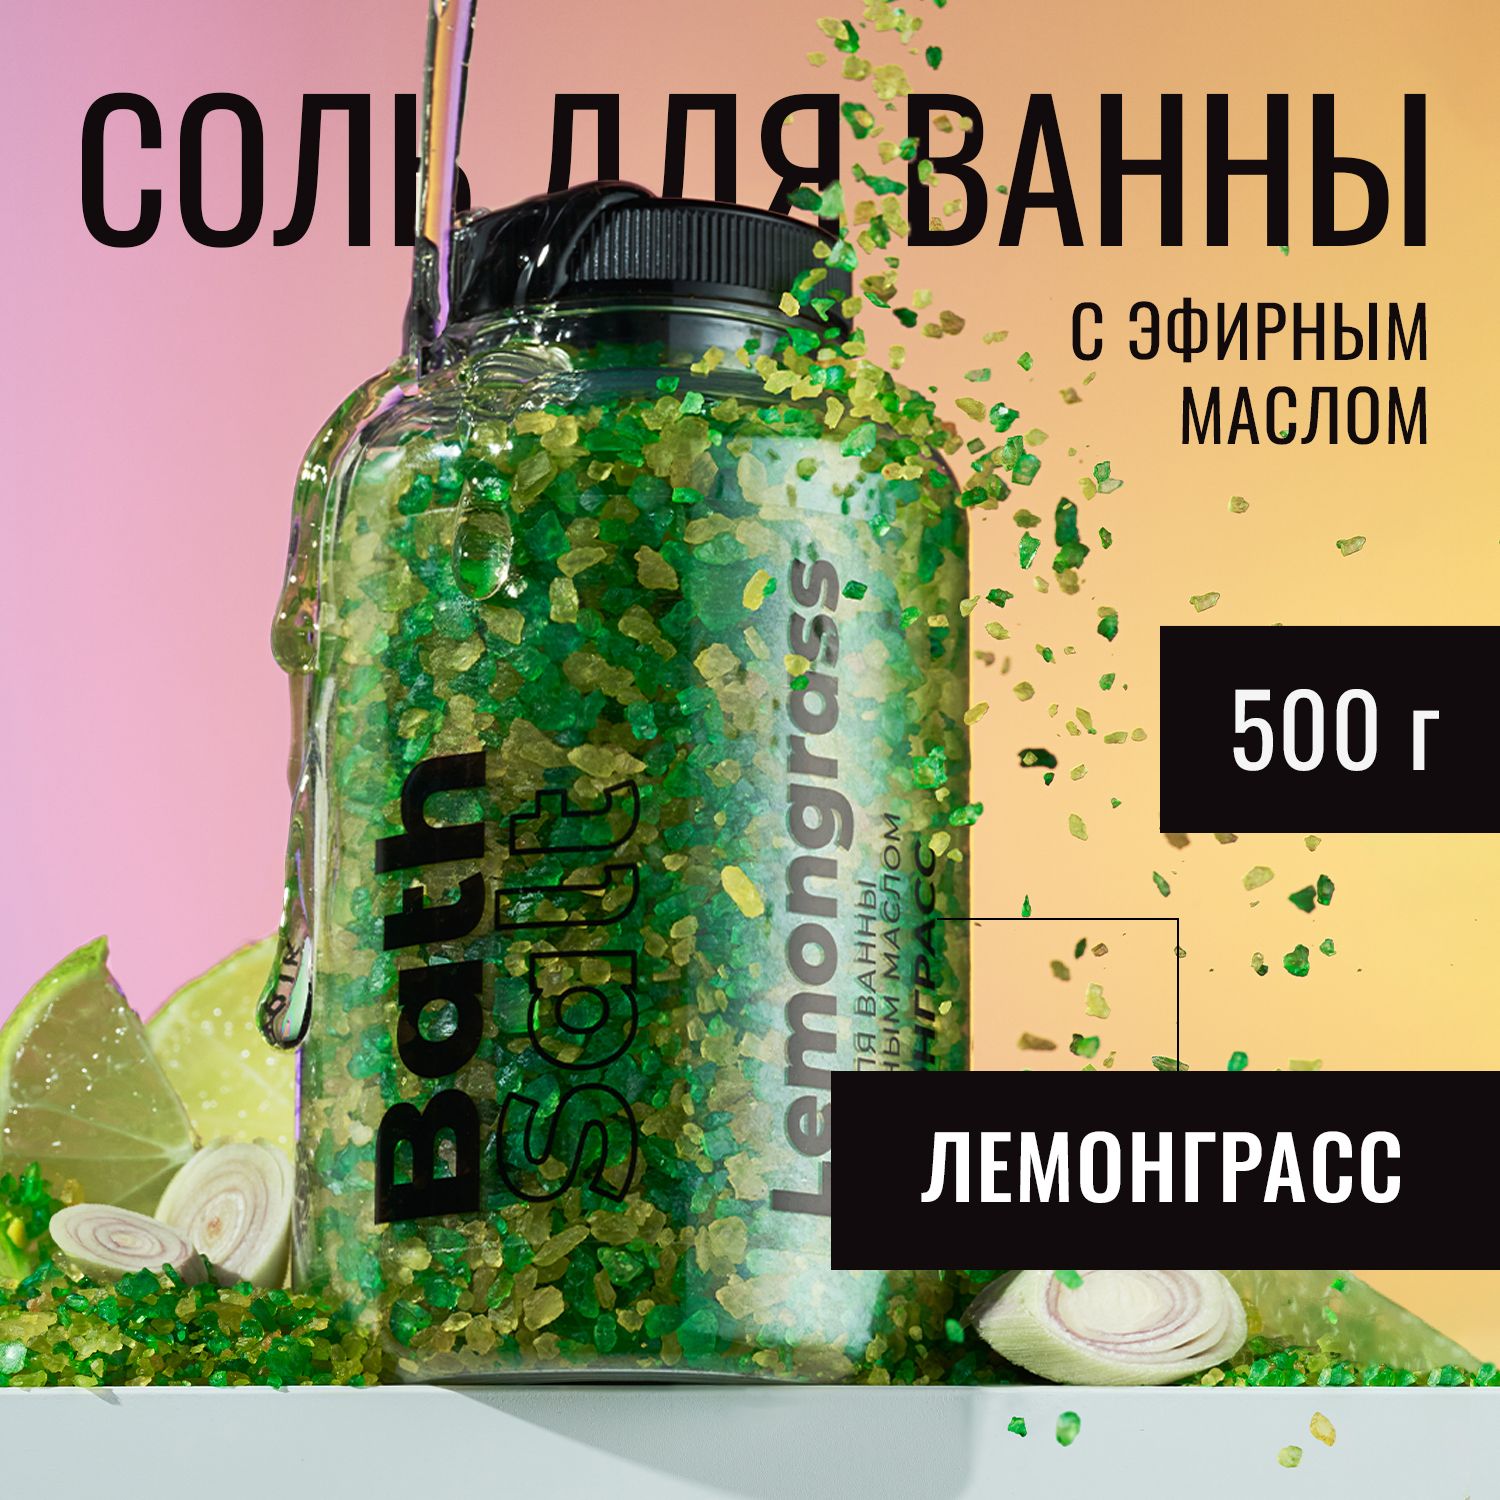 Соль для ванны Fabrik Cosmetology с маслом лемонграсса 500 г